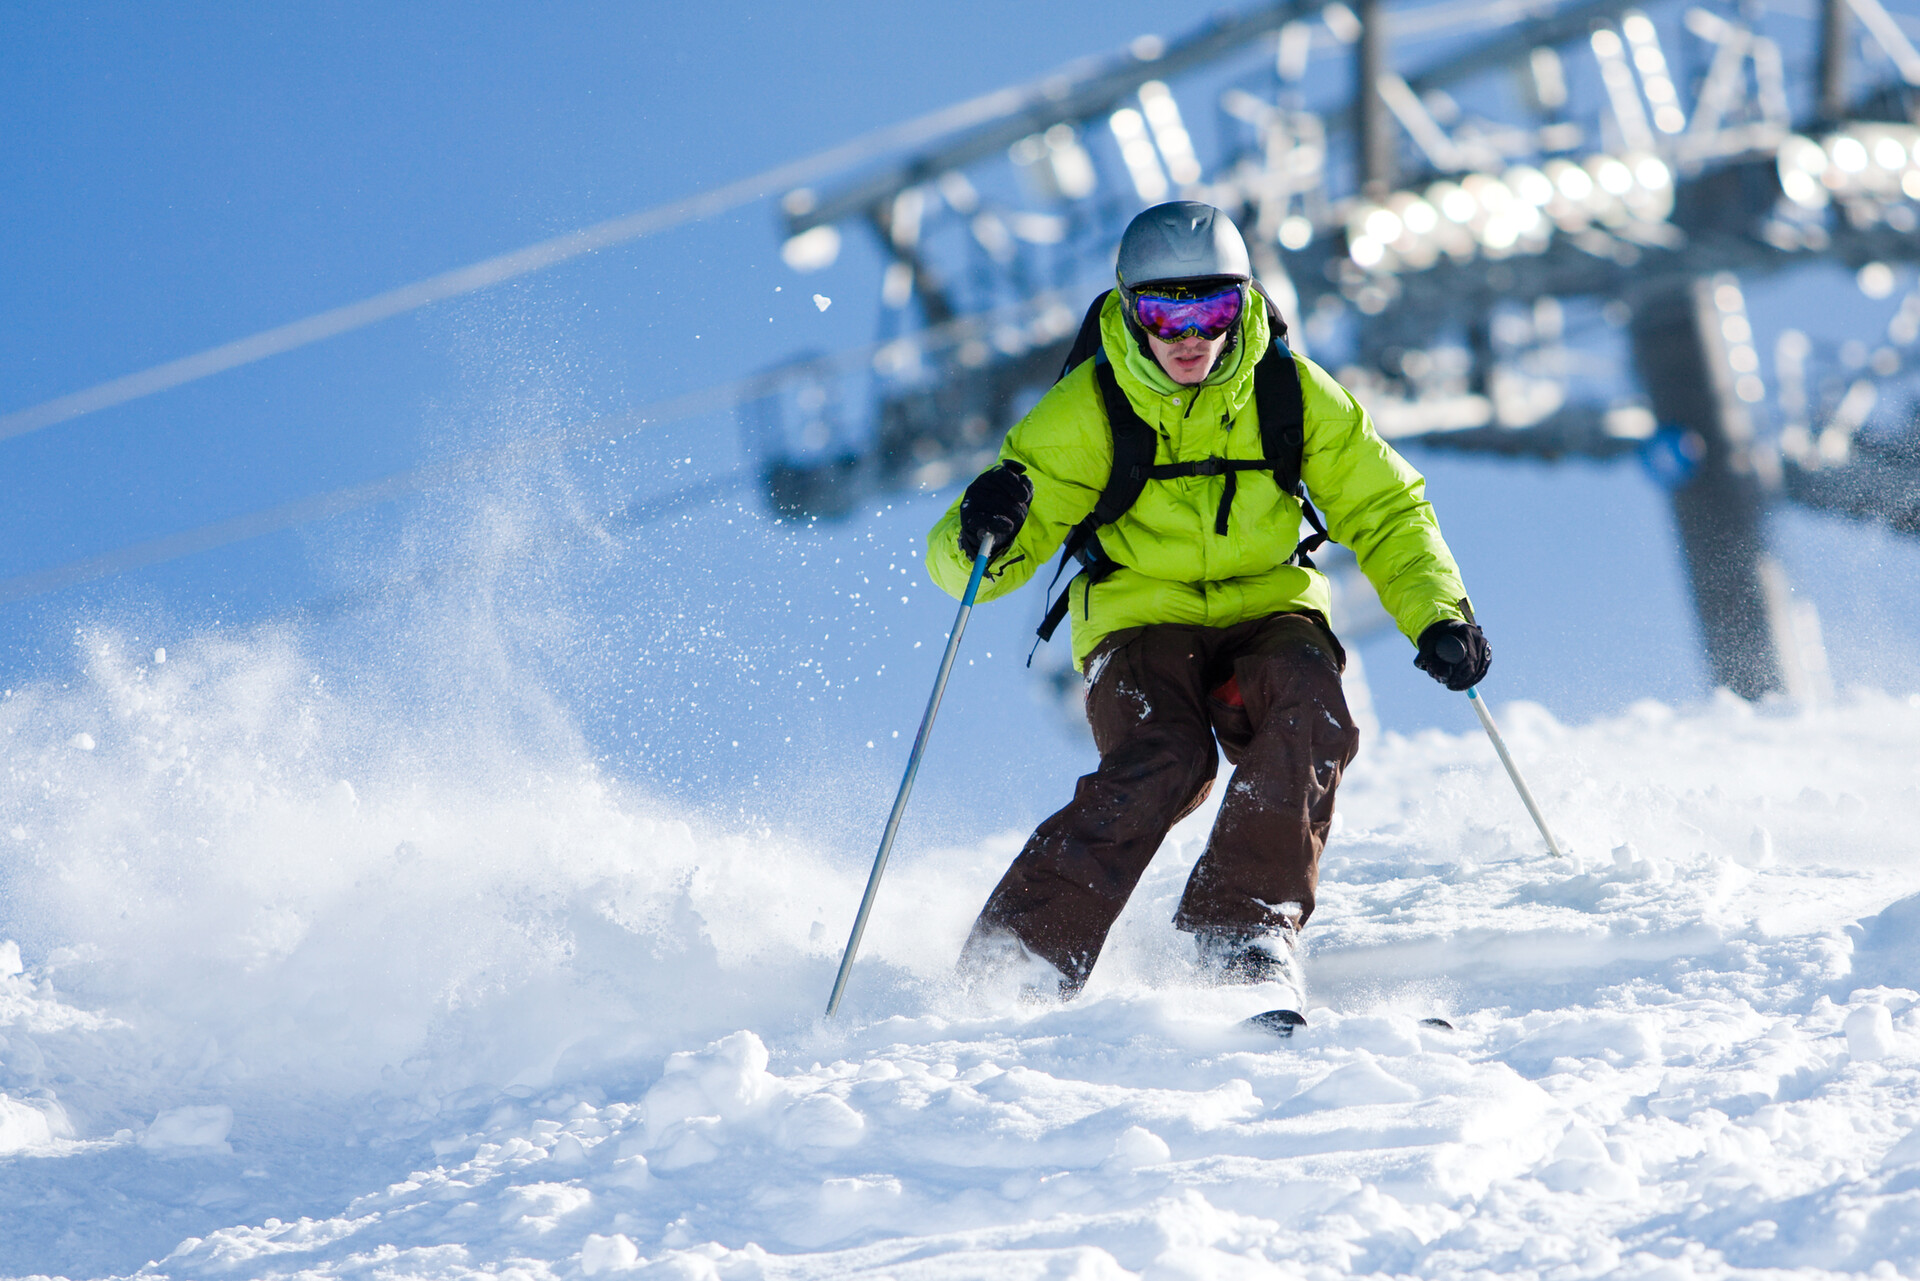 Comment bien choisir son équipement de ski ? - VTR Voyages : Le Blog